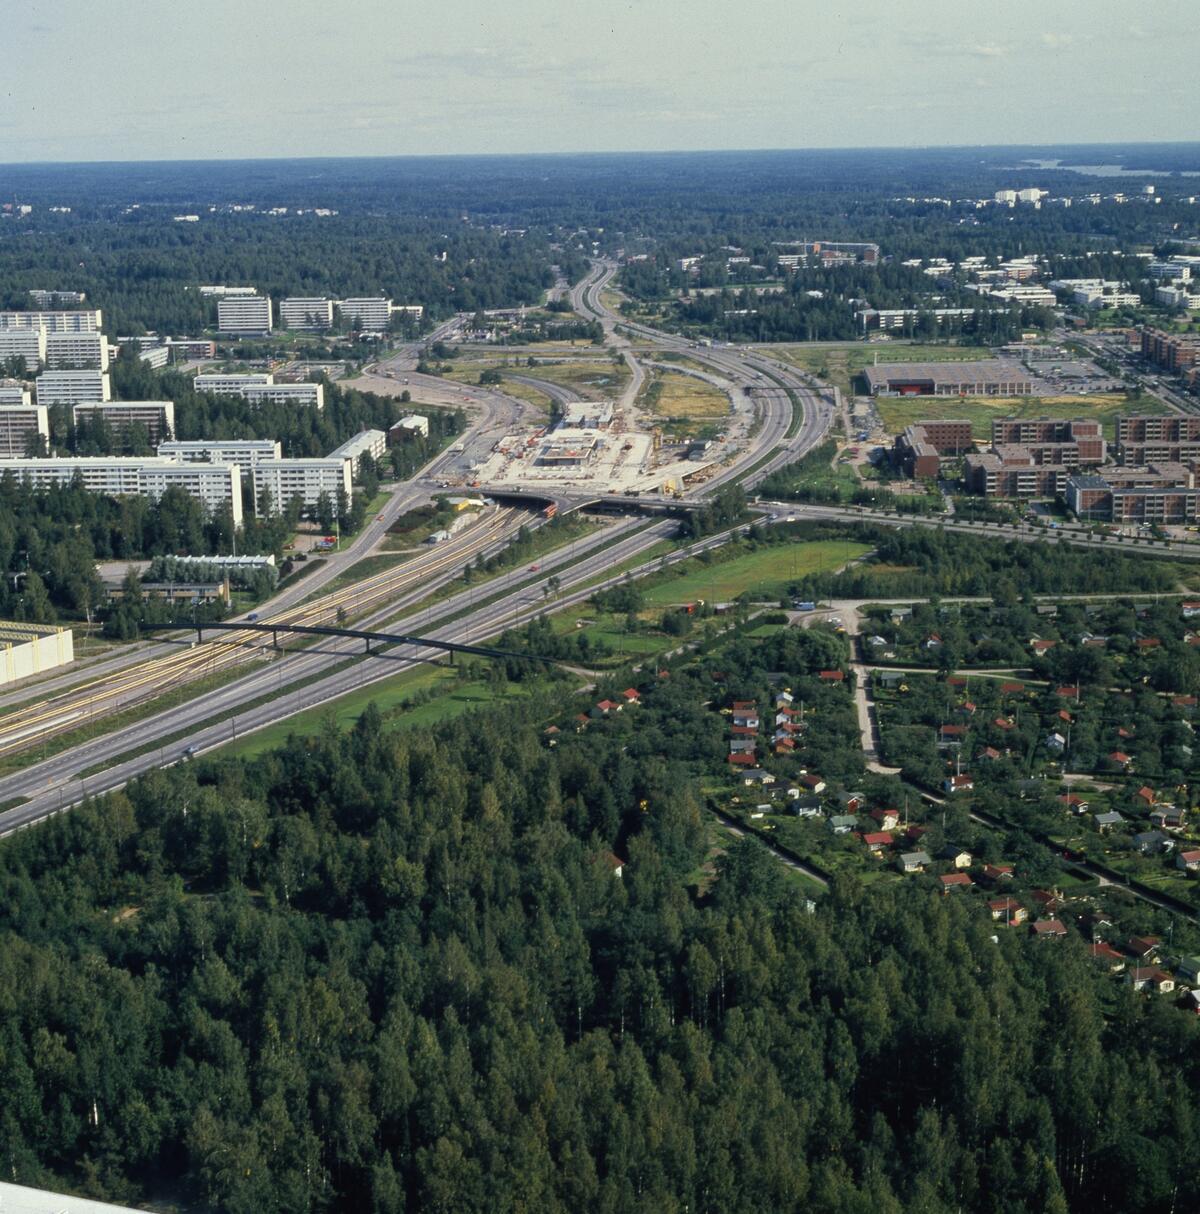 Ilmakuva Itäkeskuksen rakennustyömaasta Itäväylän suuntaisesti. Itäväylän oikealla puolella jo uusia asuinkerrostaloja. Metroaseman ja kauppakeskuksen paikalla on vielä työmaata.